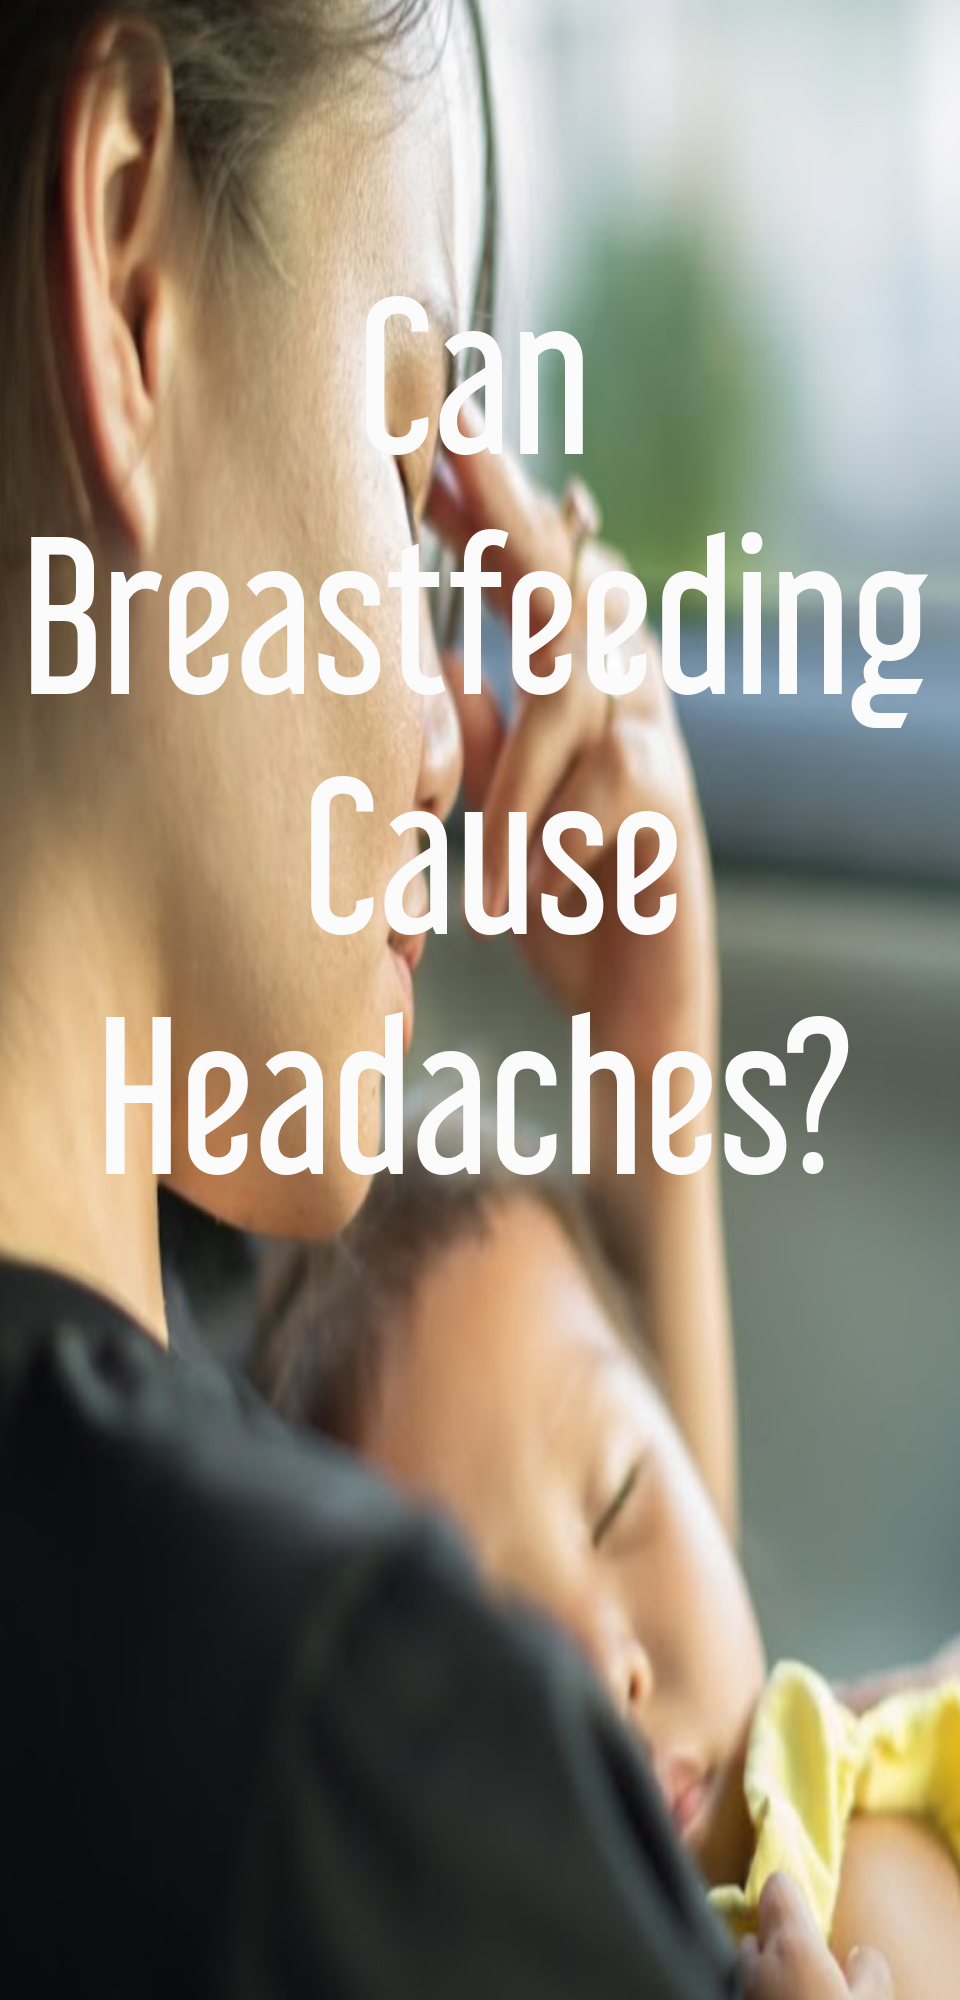 Can Breastfeeding Cause Headaches?